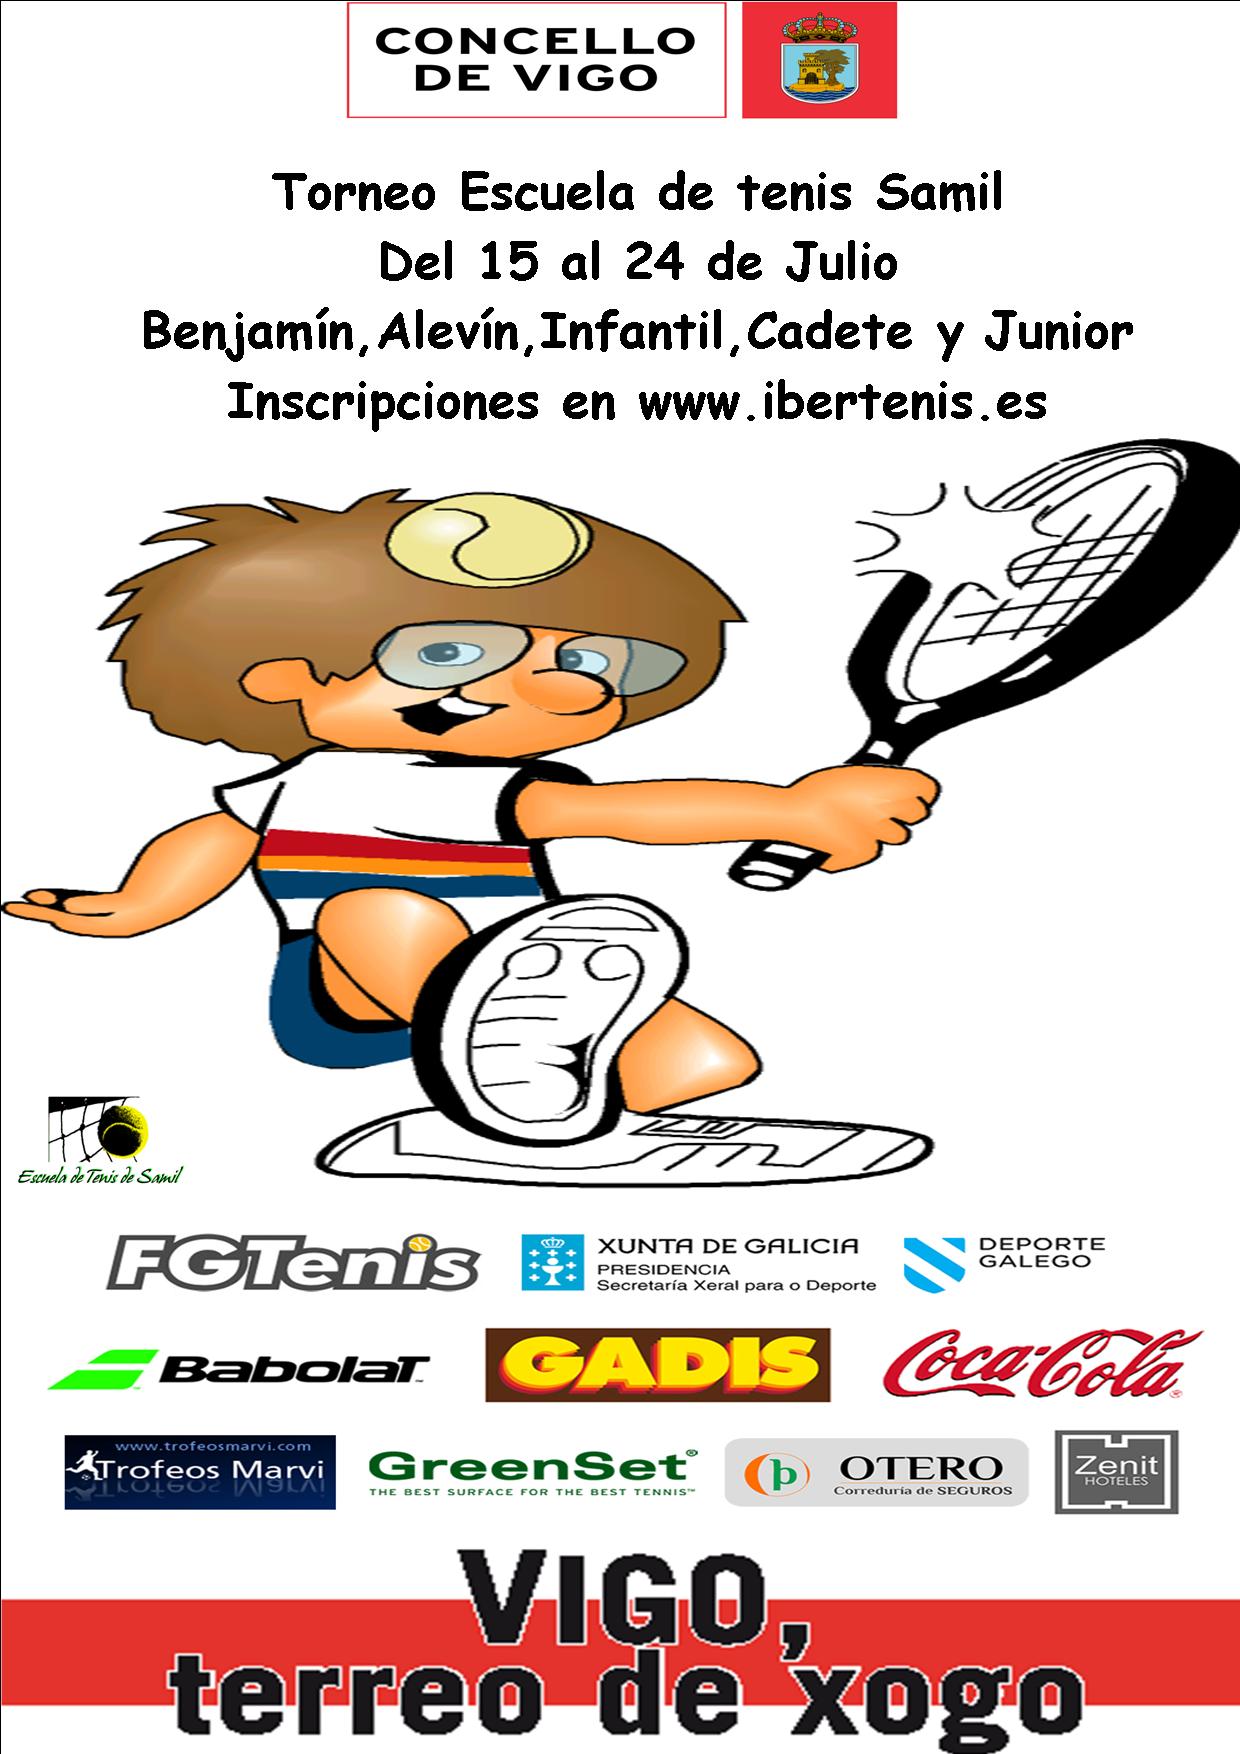 Cartel del Torneo Escuela de Tenis Samil